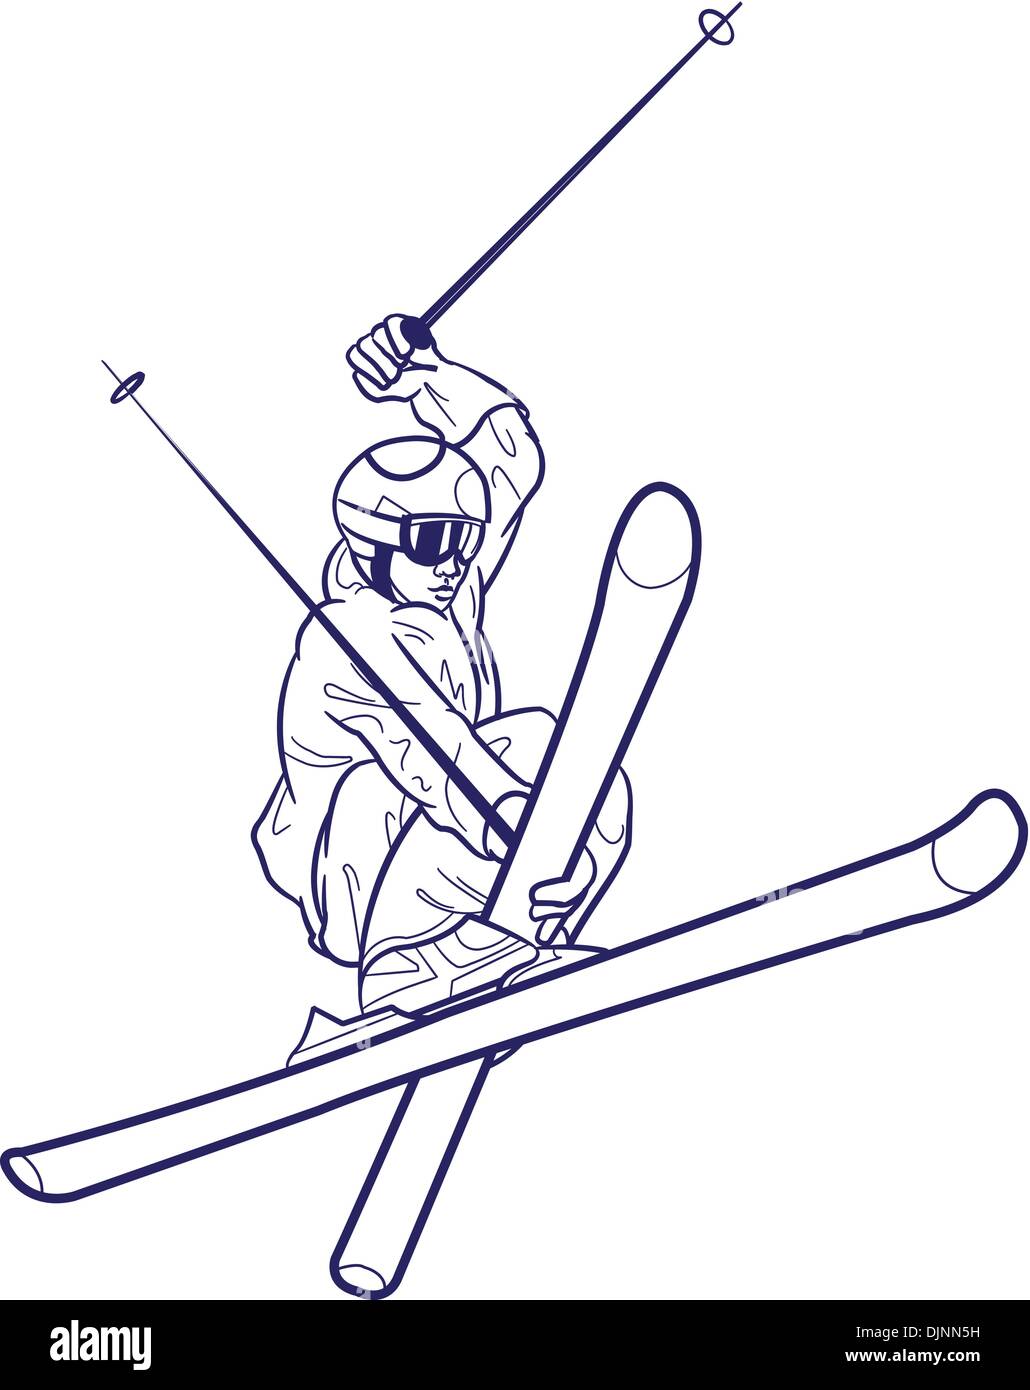 Le dessin des lignes de personne le ski. Illustration de Vecteur